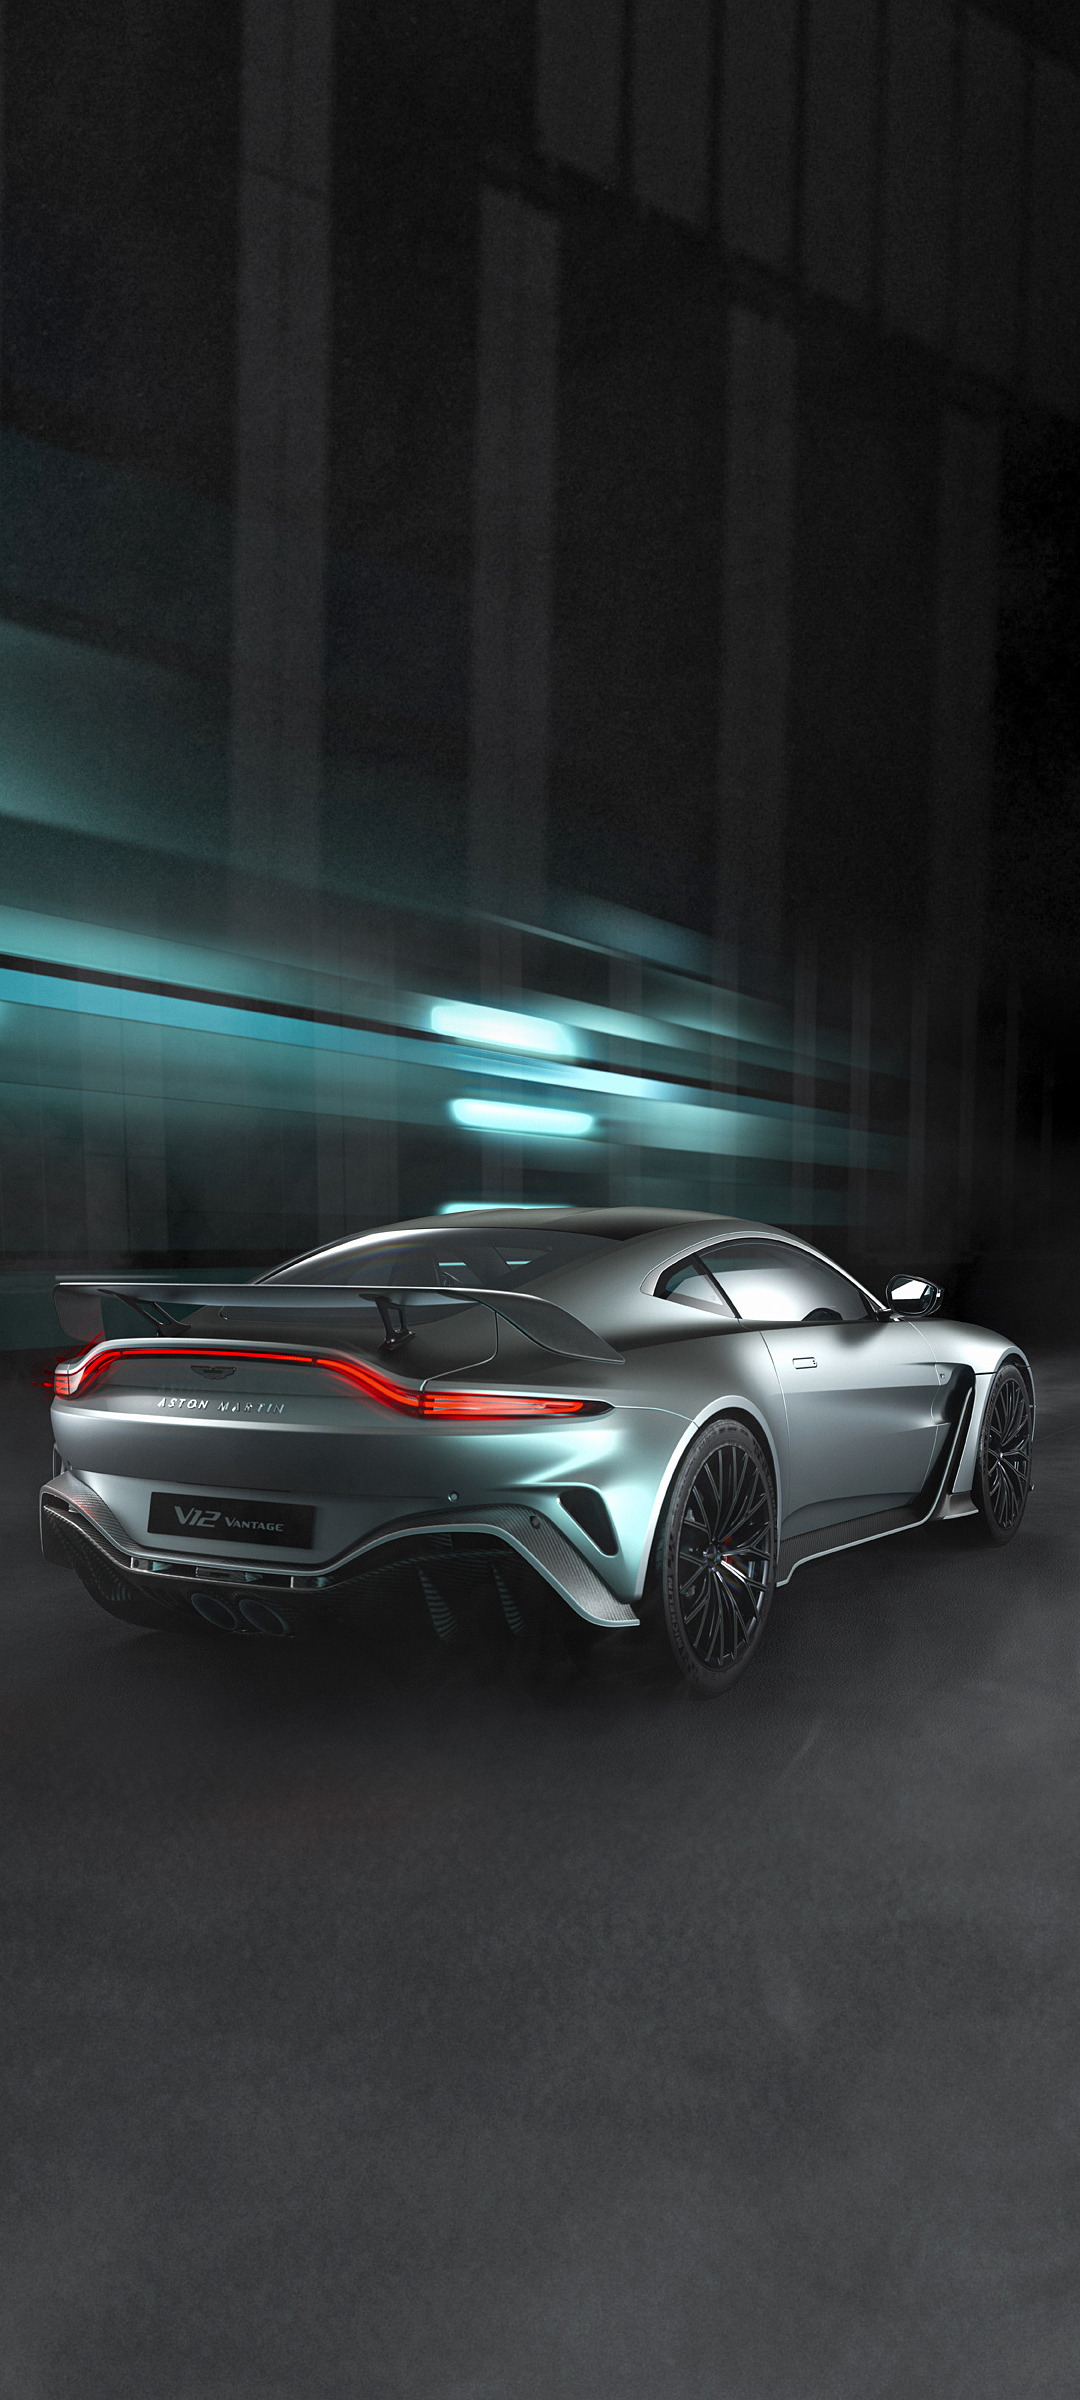 Descarga gratuita de fondo de pantalla para móvil de Aston Martin, Vehículos, Aston Martin V12 Vantage.